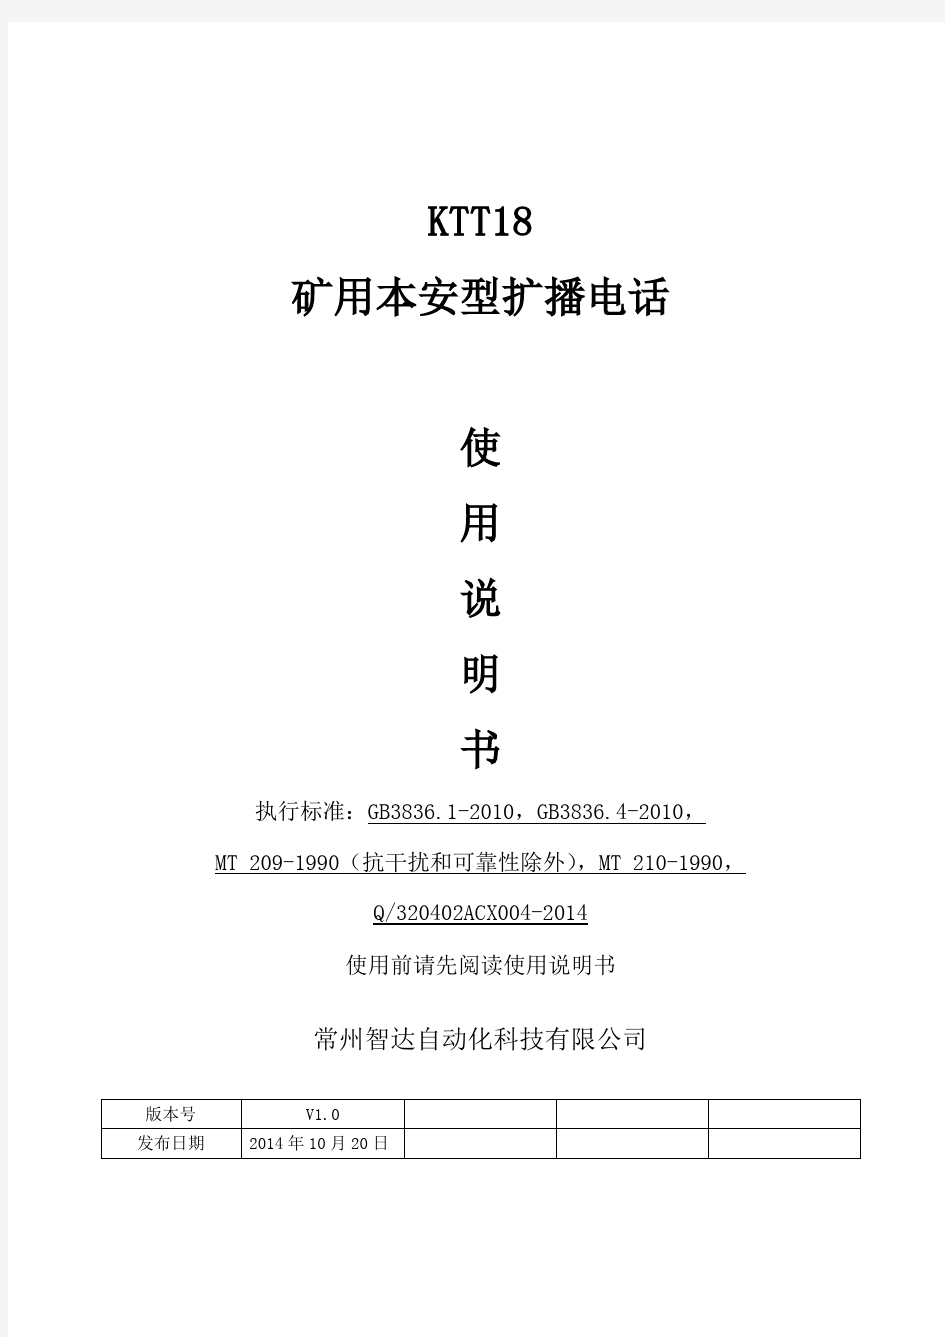 KTT18矿用本安型扩播电话说明书